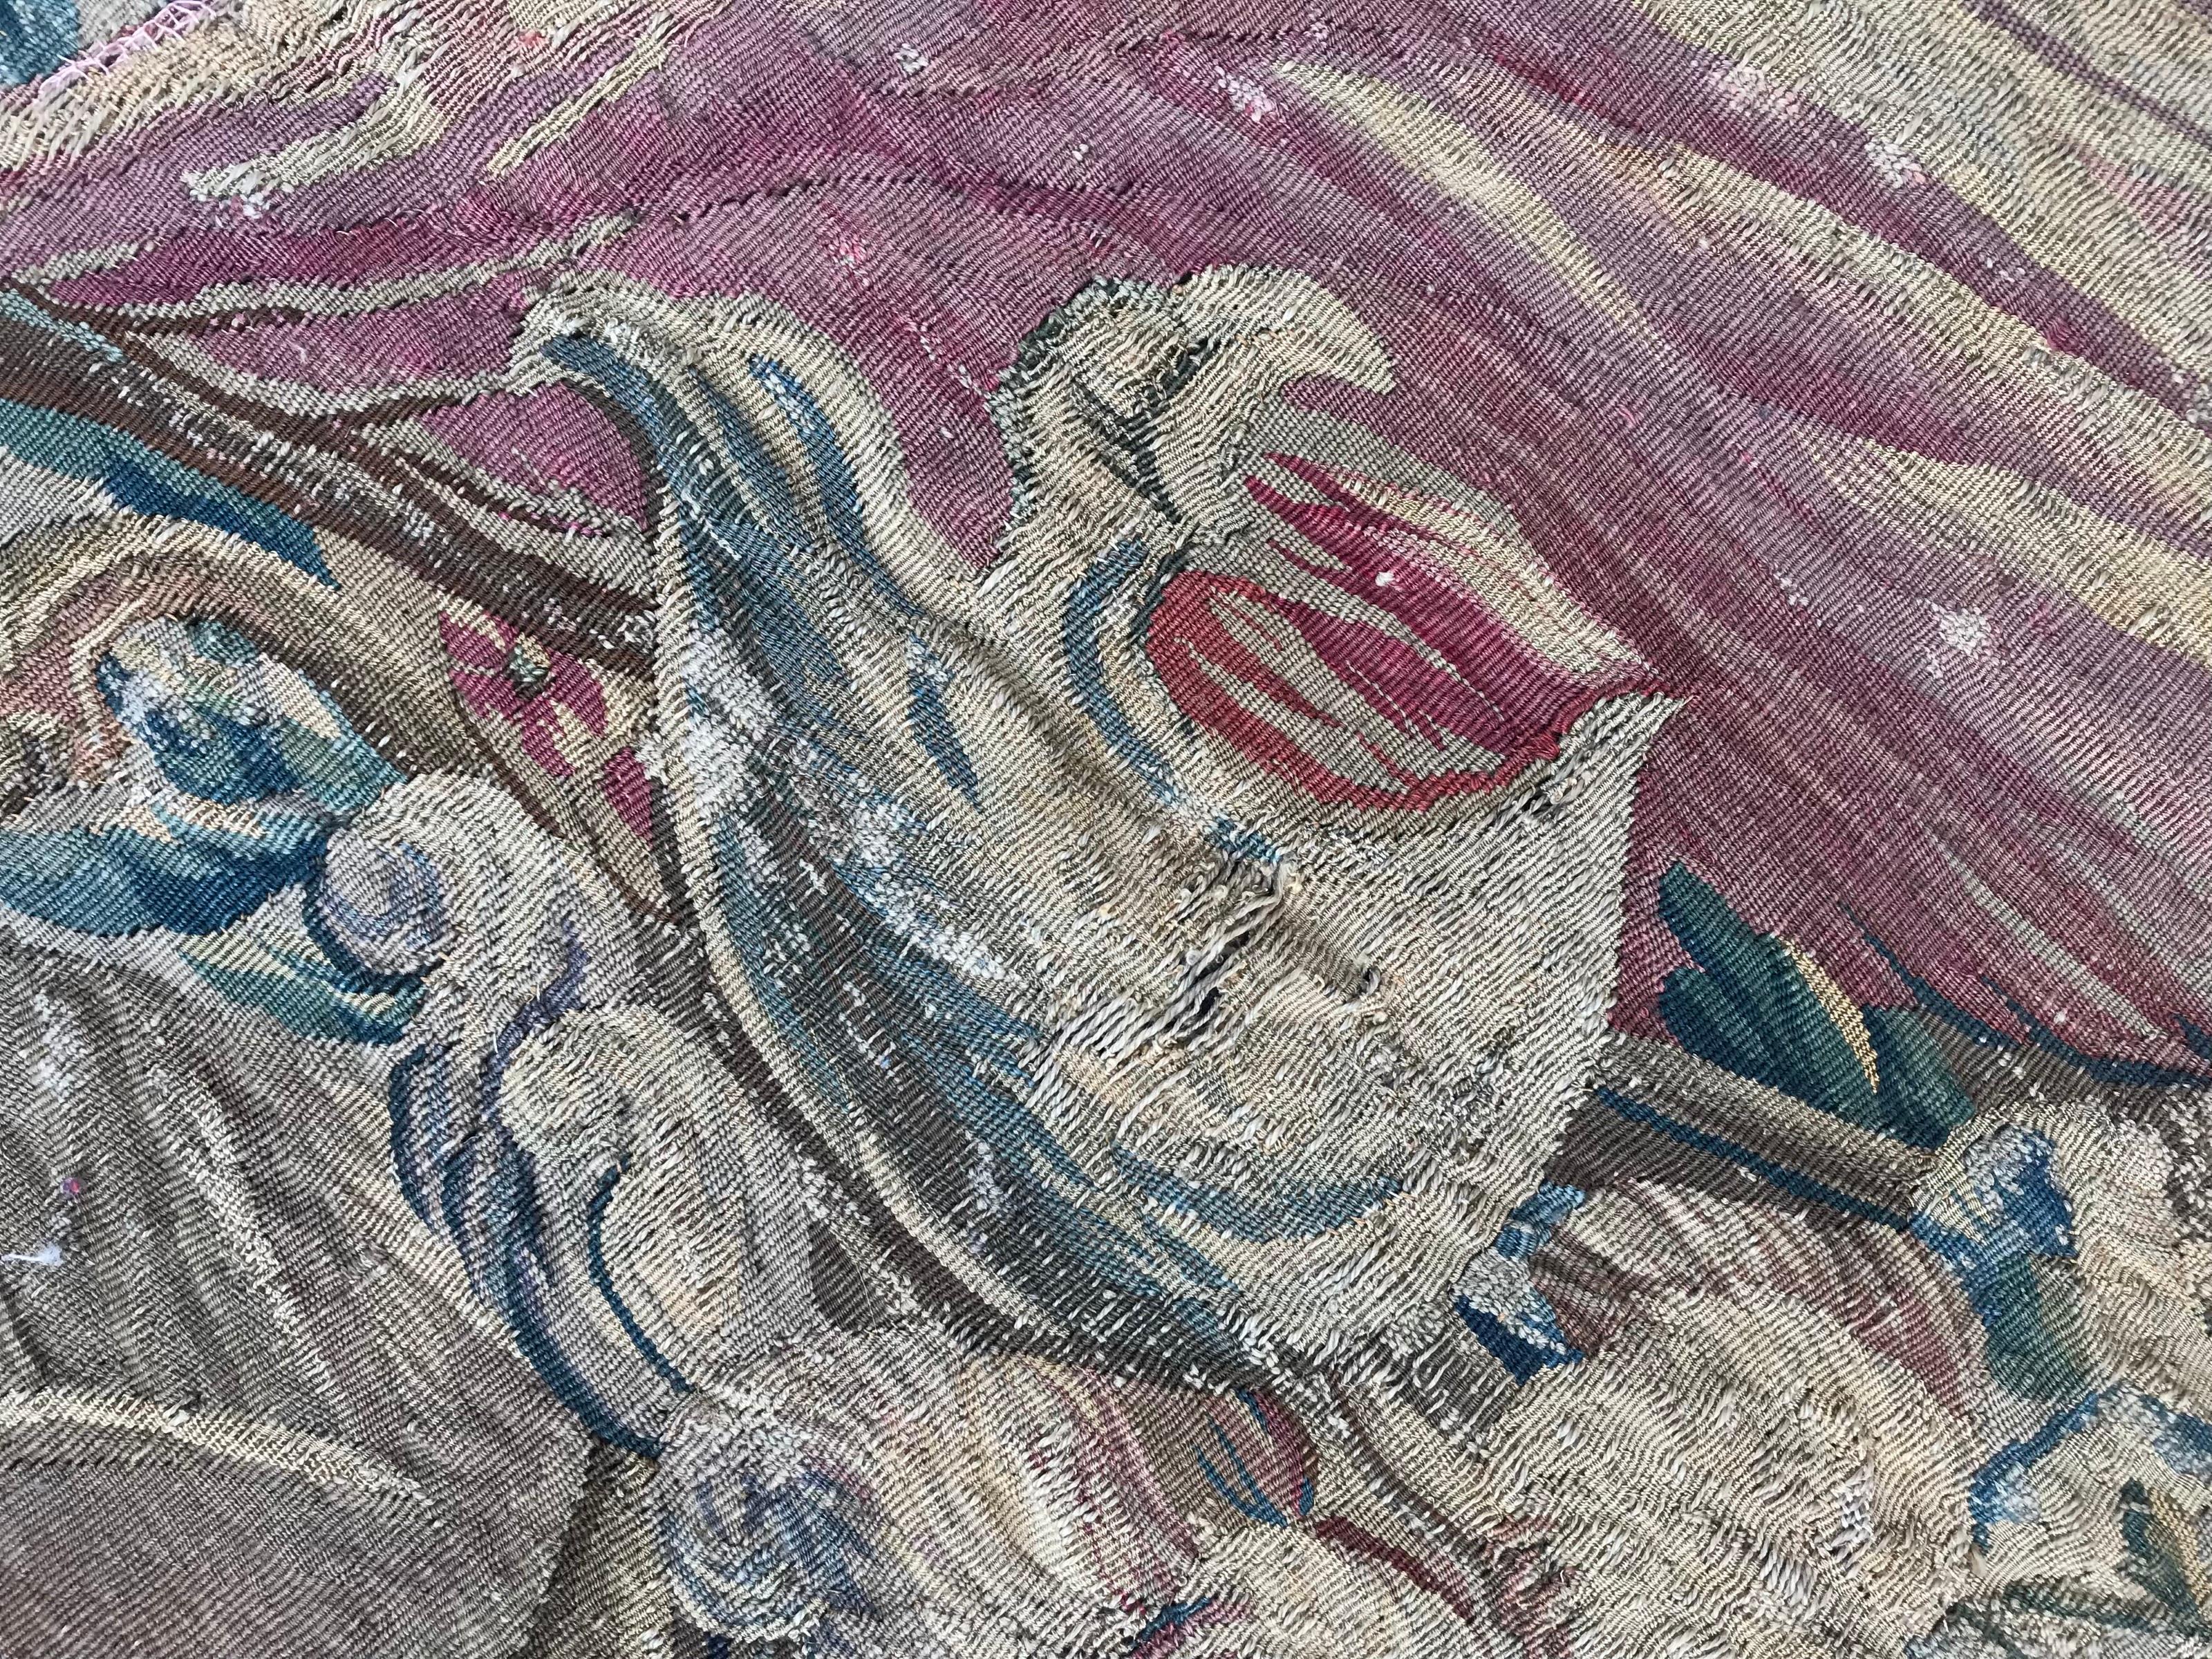 Très belle tapisserie d'Aubusson française du 18ème siècle avec un beau dessin et de belles couleurs rouge, bleu et vert, entièrement tissée à la main à la manufacture d'Aubusson avec de la laine et de la soie tissées sur une base de laine.